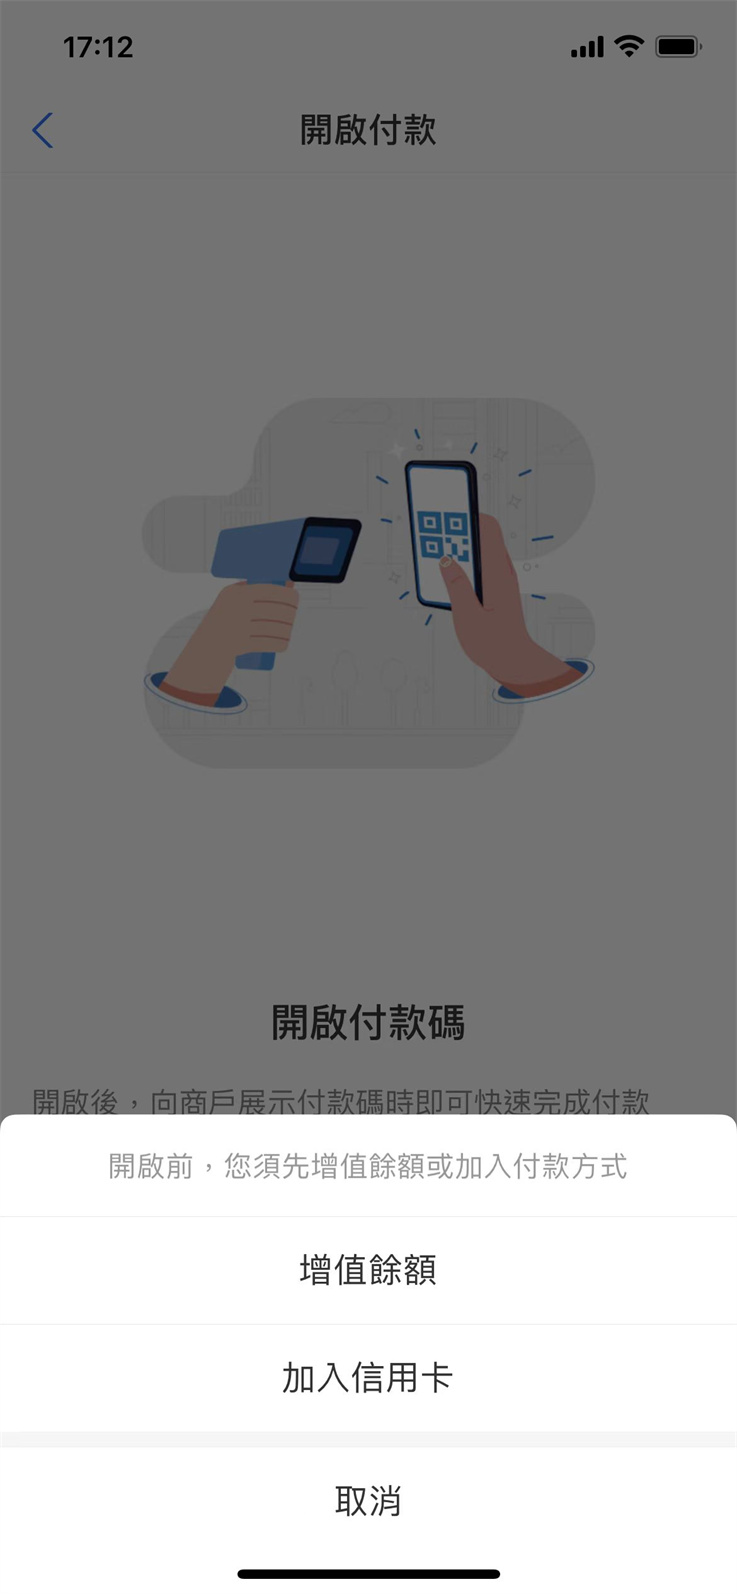 【香港汇款】Alipay HK收款帳號查詢教程